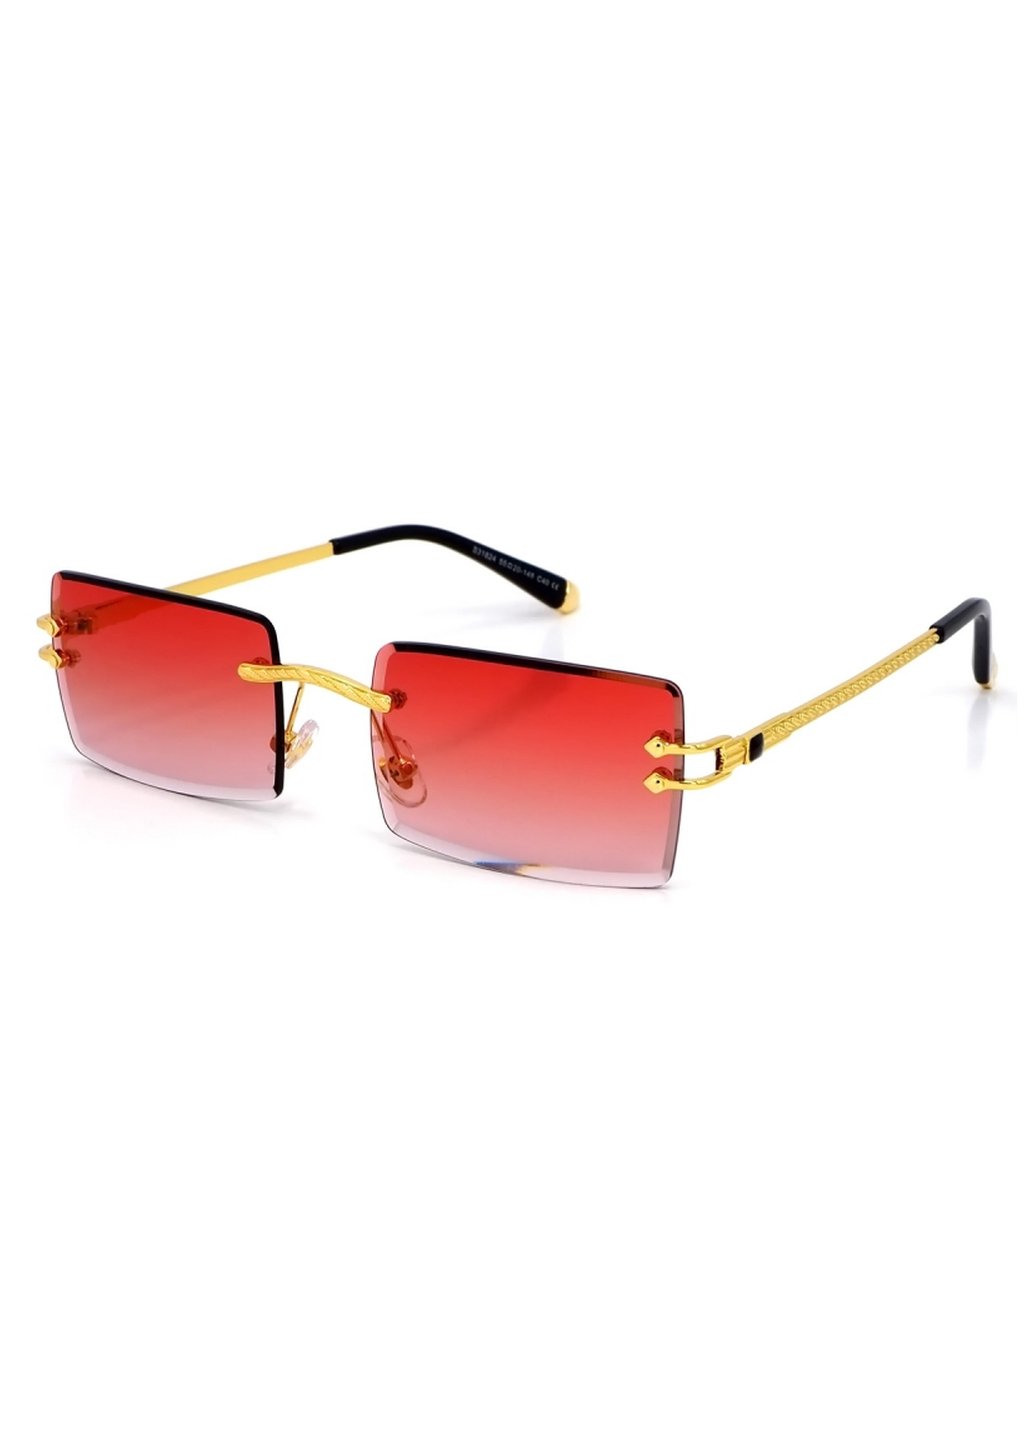 Купить Женские солнцезащитные очки Merlini с поляризацией S31824 117075 - Золотистый в интернет-магазине